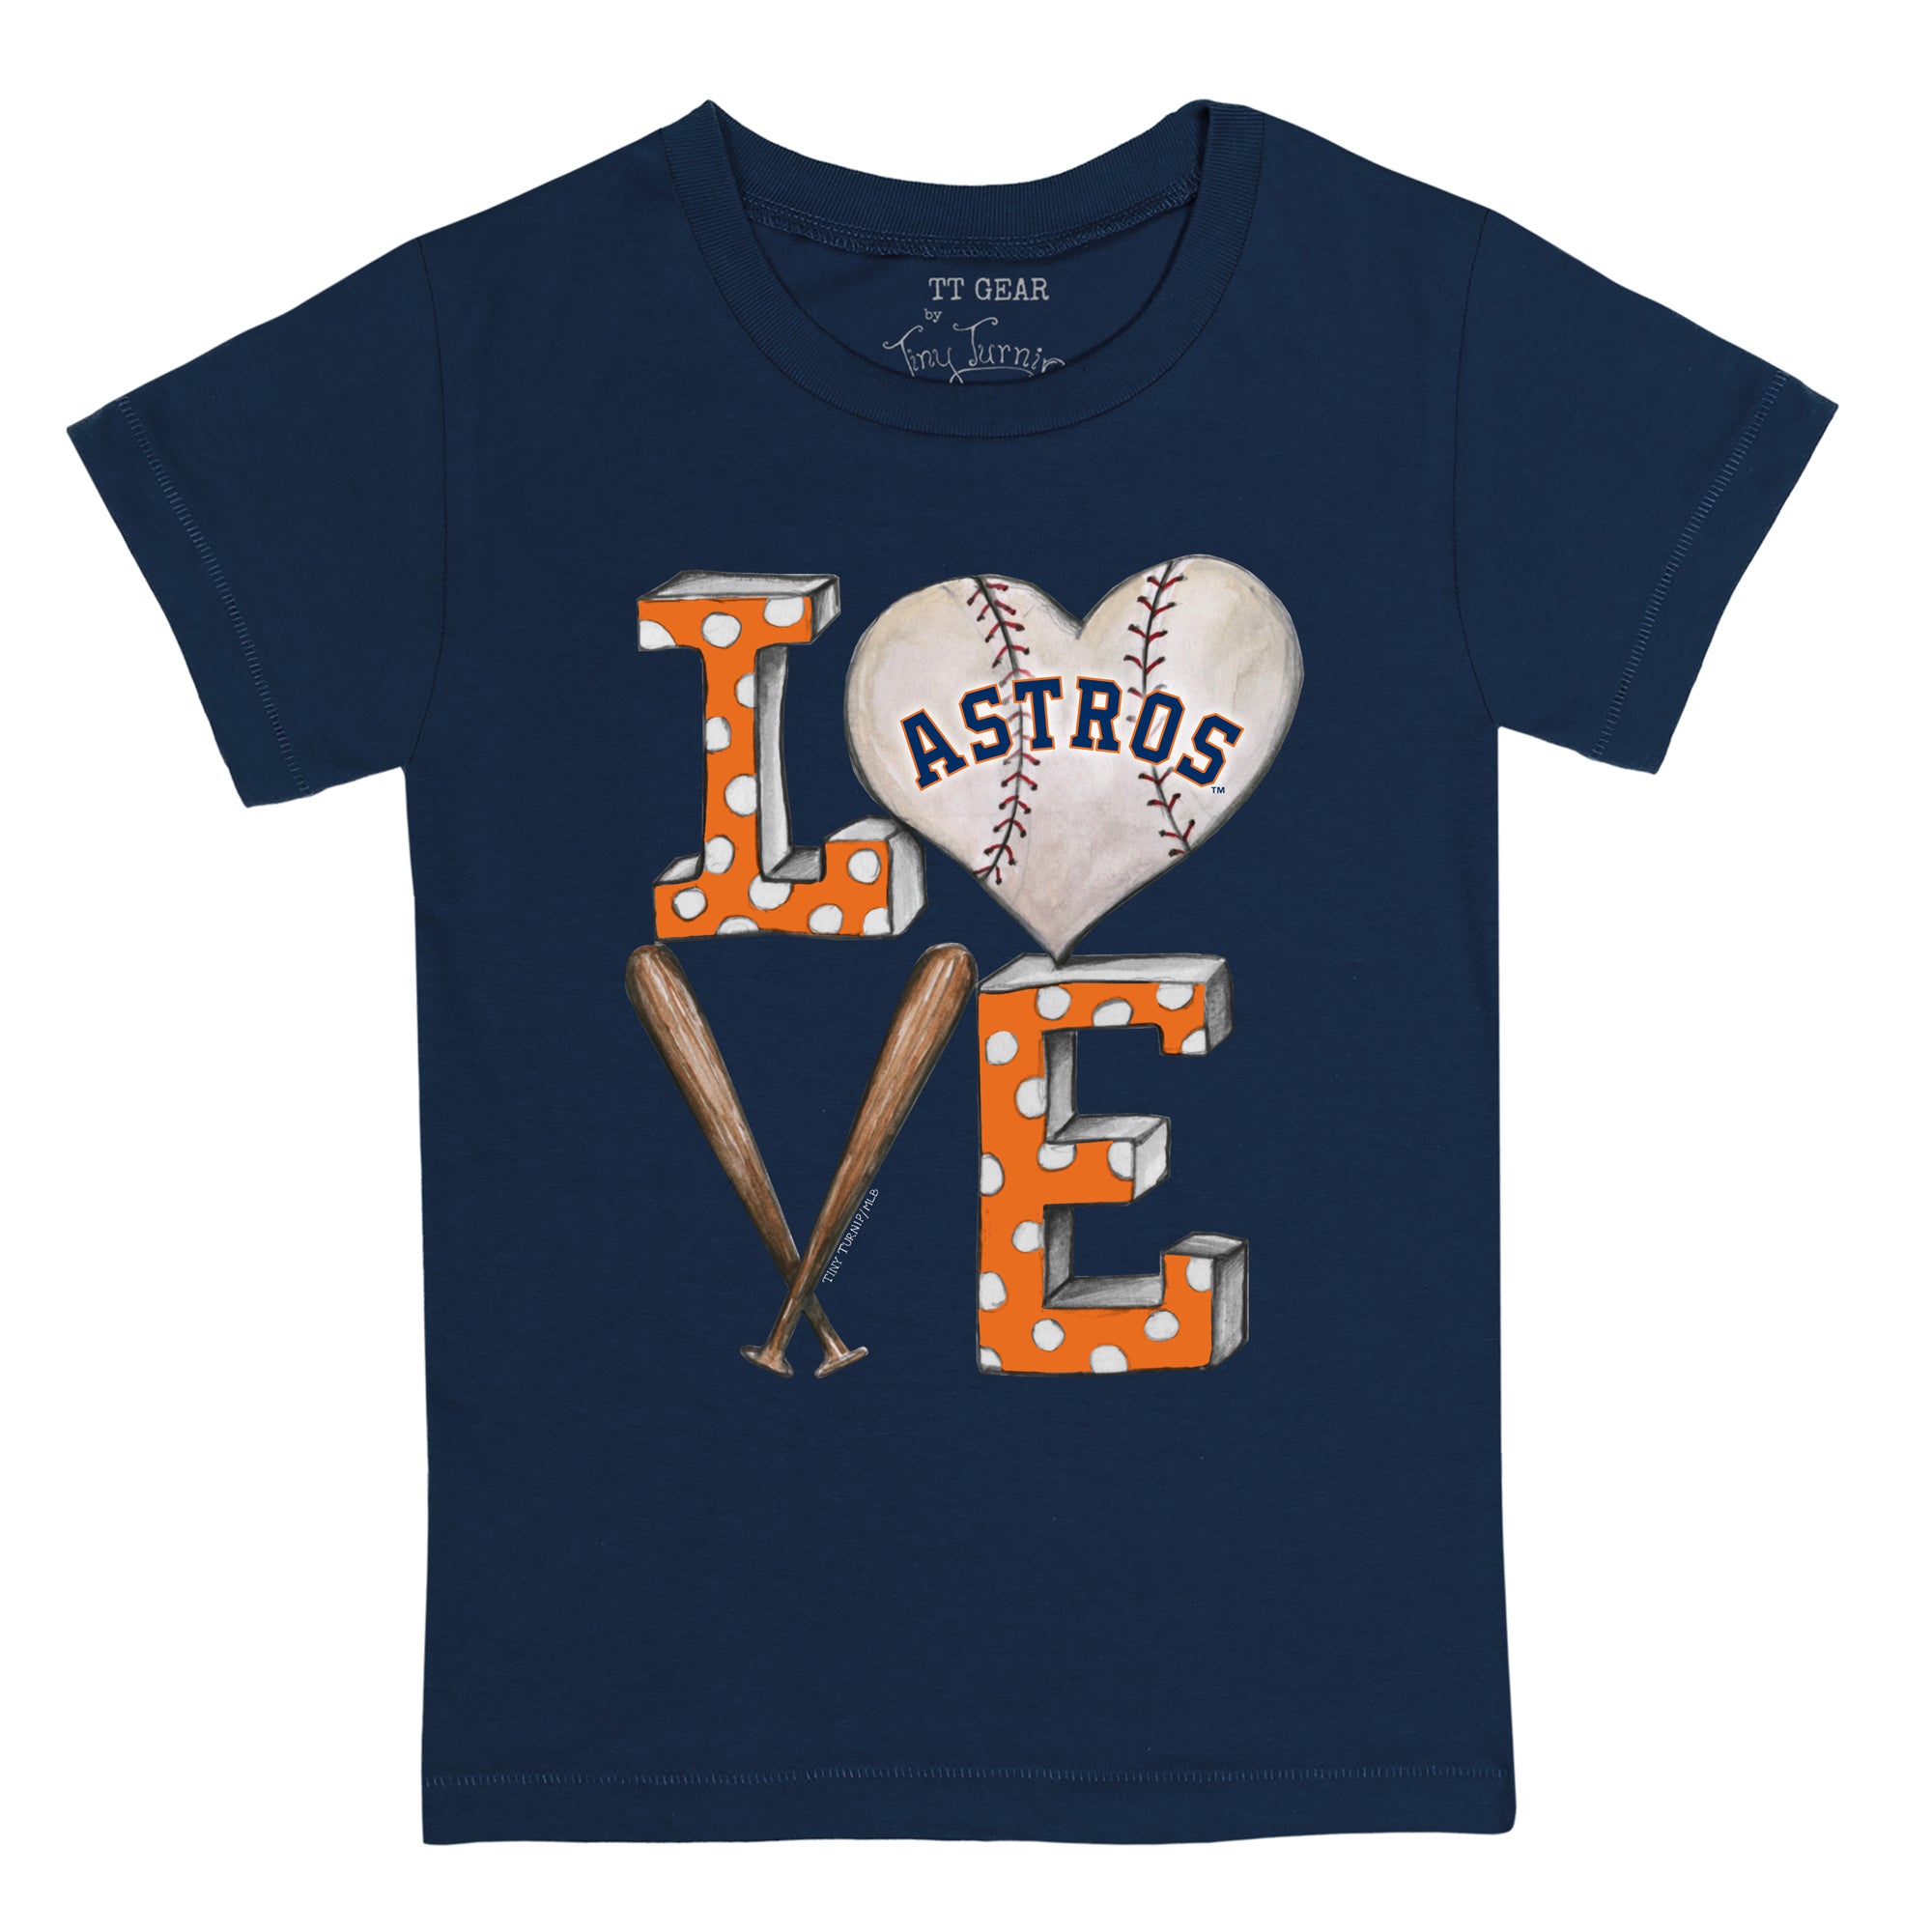 Astros shirt, kids Astros shirt, boys Astros shirt, cute Astros shirt,  girls Astros shirt, custom baseball shirt, Astros baseball shirt